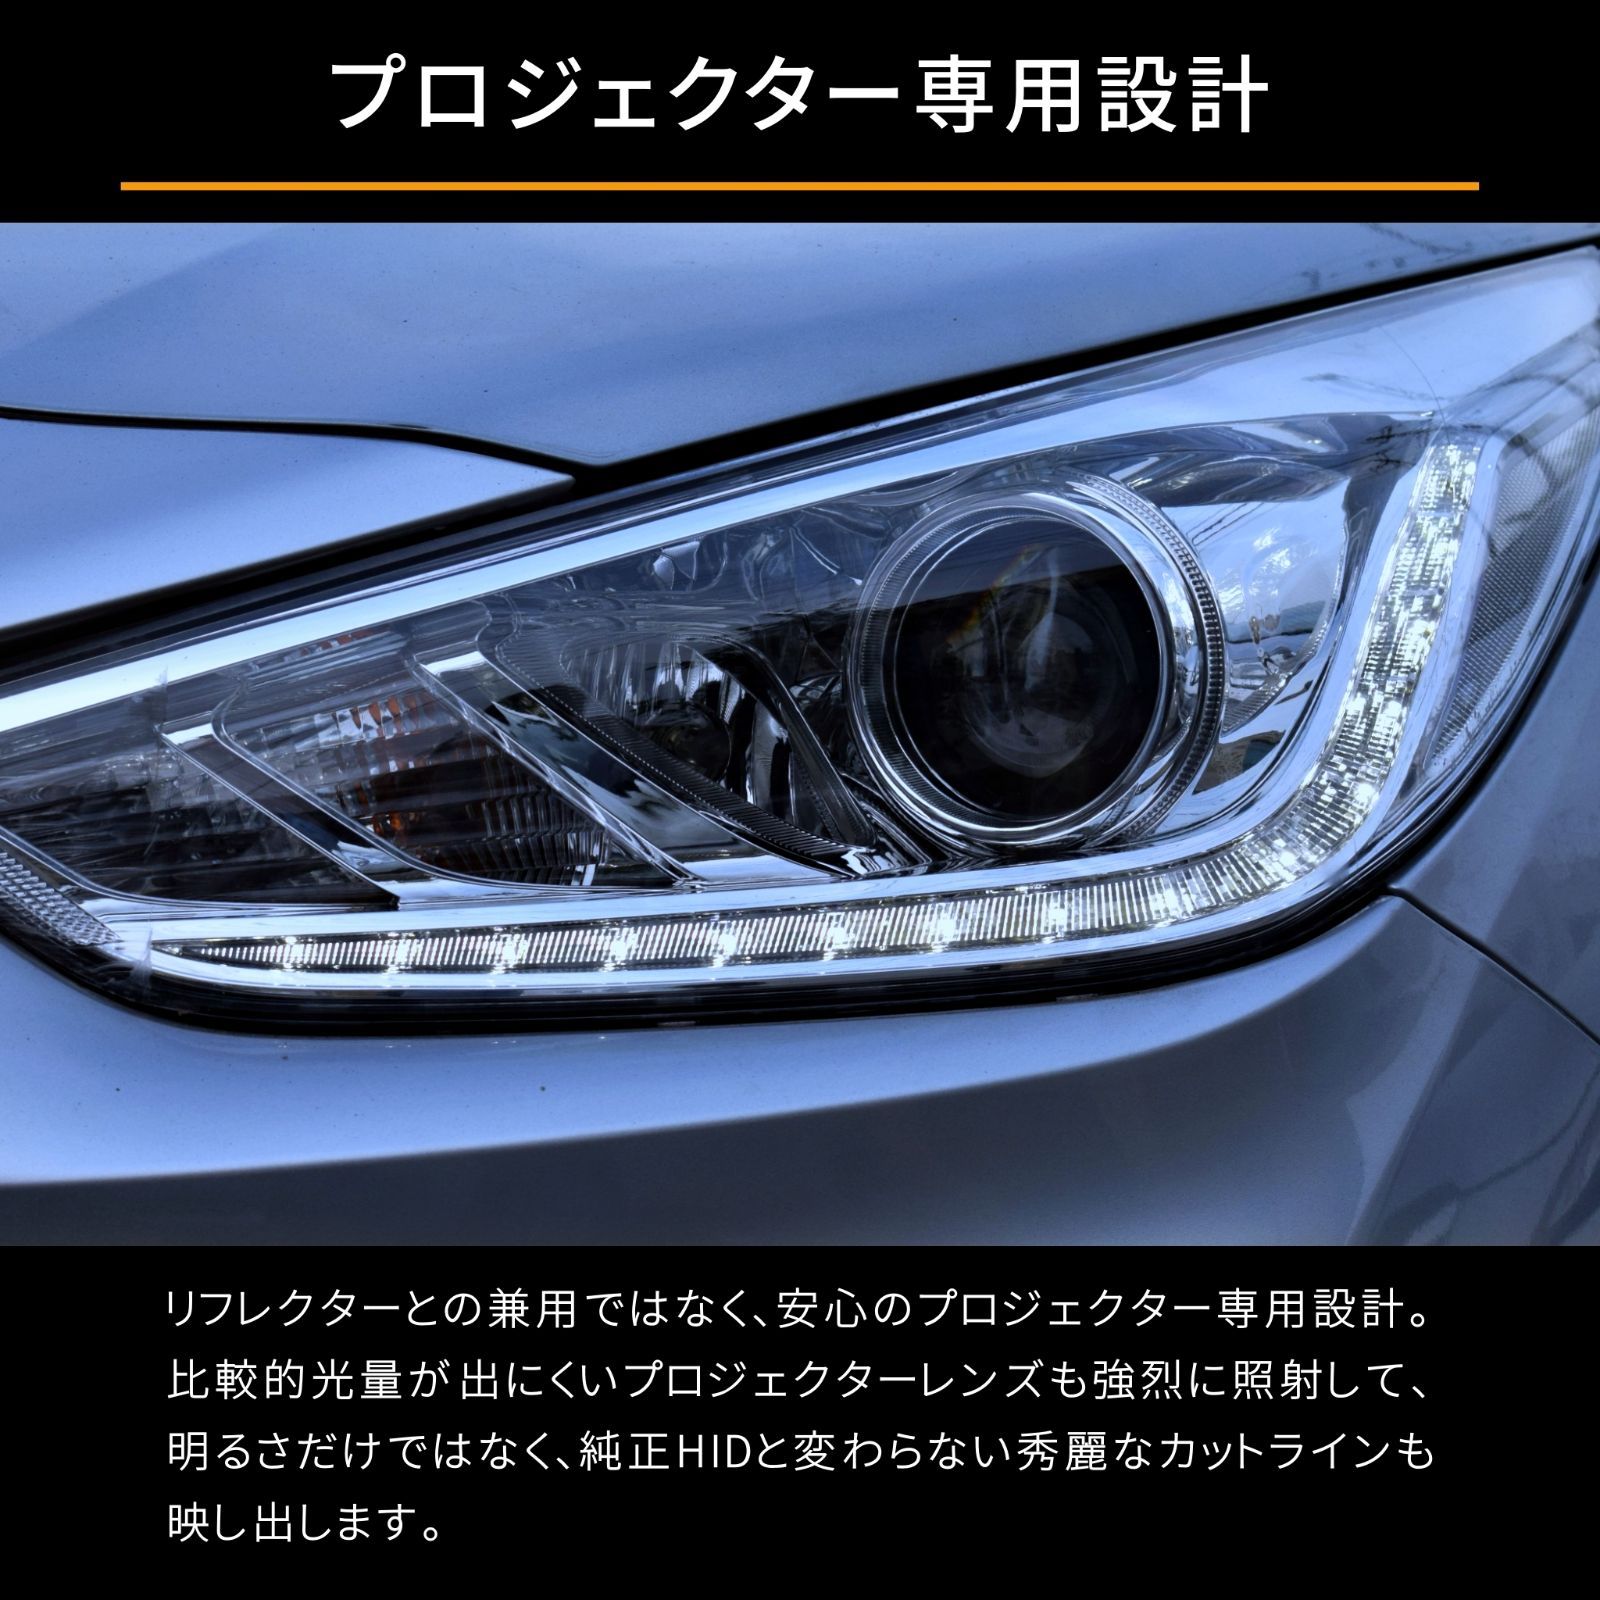 送料無料 1年保証 トヨタ シエンタ 80系 後期 NCP81 NCP85 (H25.9-H27.6) 純正HID用 BrightRay D4S LED ヘッドライト 車検対応